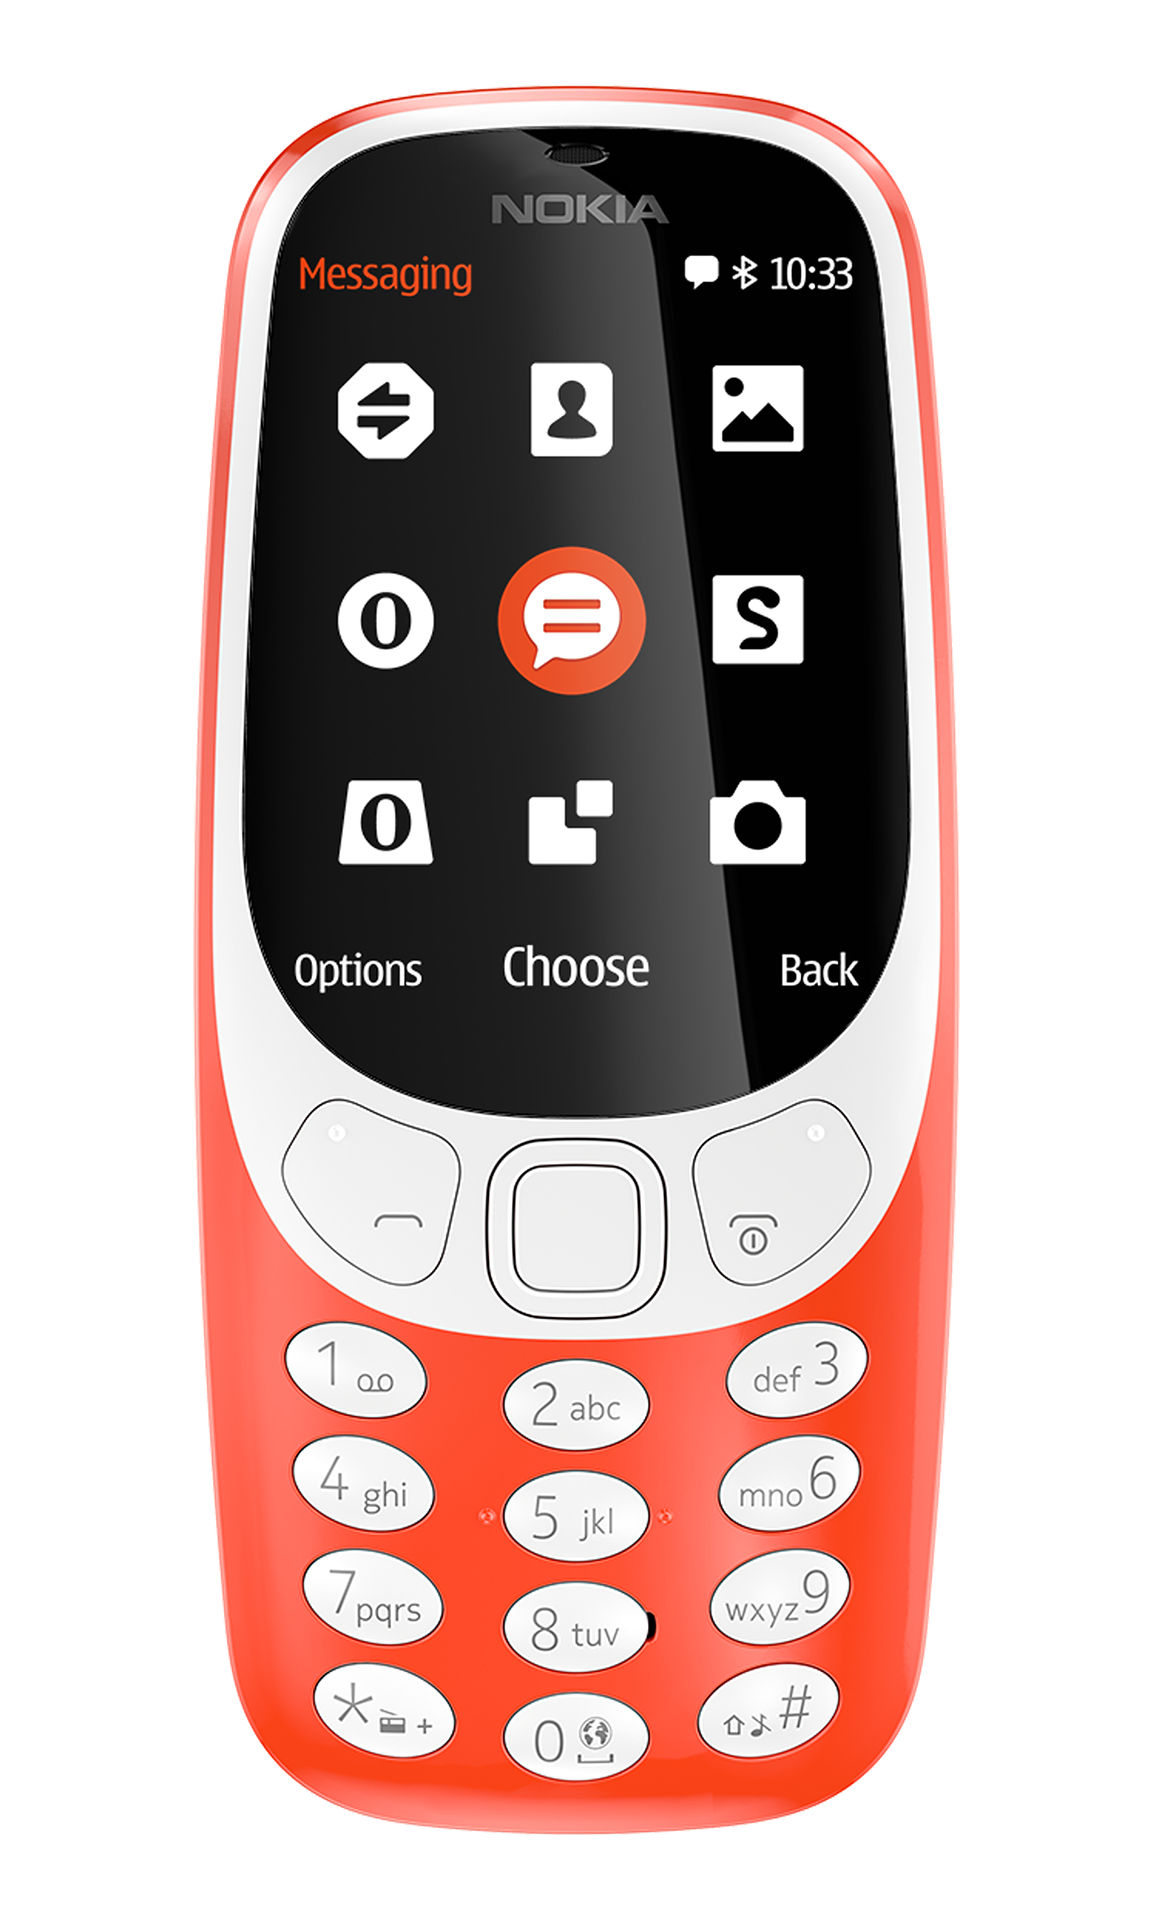 Nokia 3310 (2017) - Wikipedia